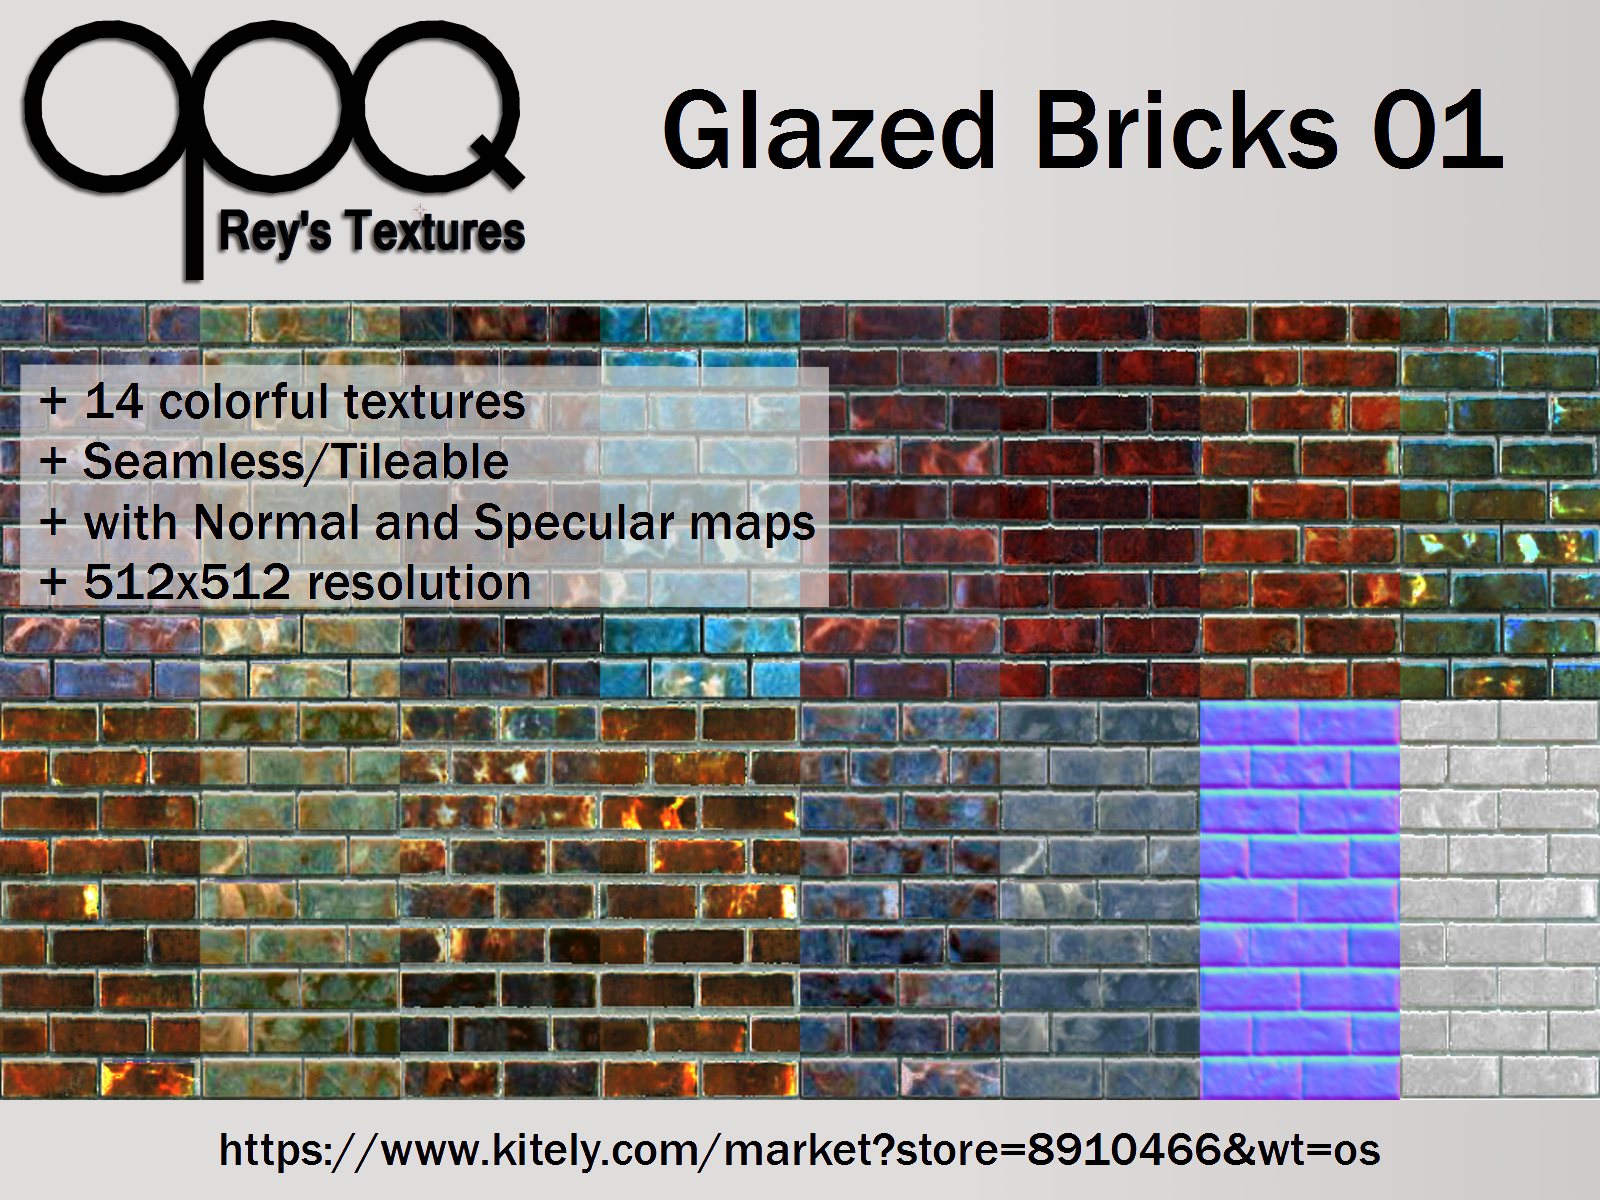 Rey's Glazed Bricks 01 Poster Kitely.jpg